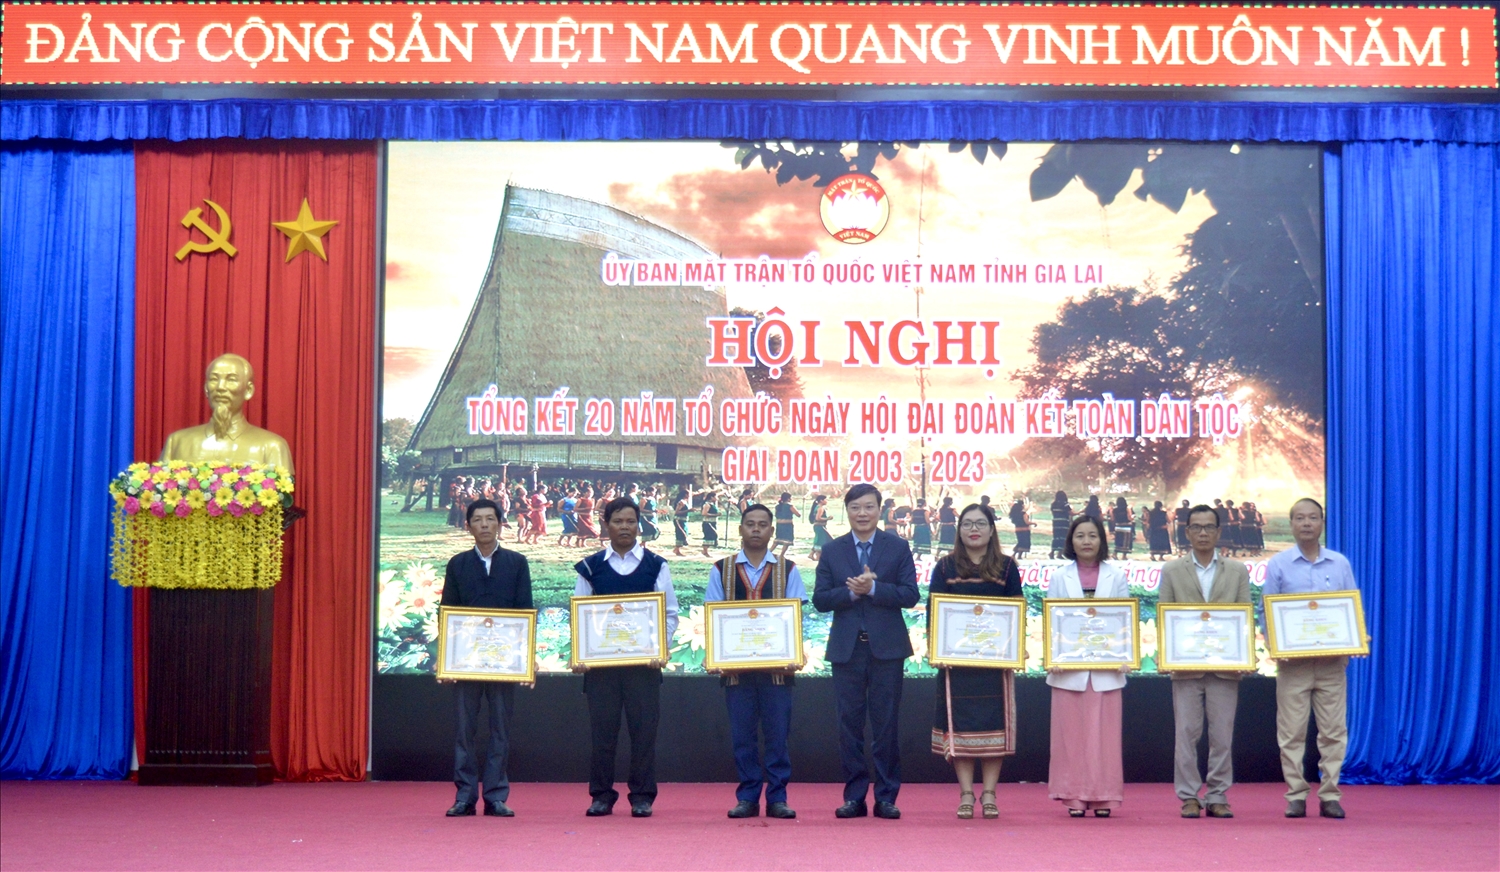 Chủ tịch UBND tỉnh Gia Lai tặng bằng khen cho các tập thể có thành tích xuất sắc trong tổ chức thực hiện Ngày hội Đại đoàn kết toàn dân tộc giai đoạn 2003 - 2023